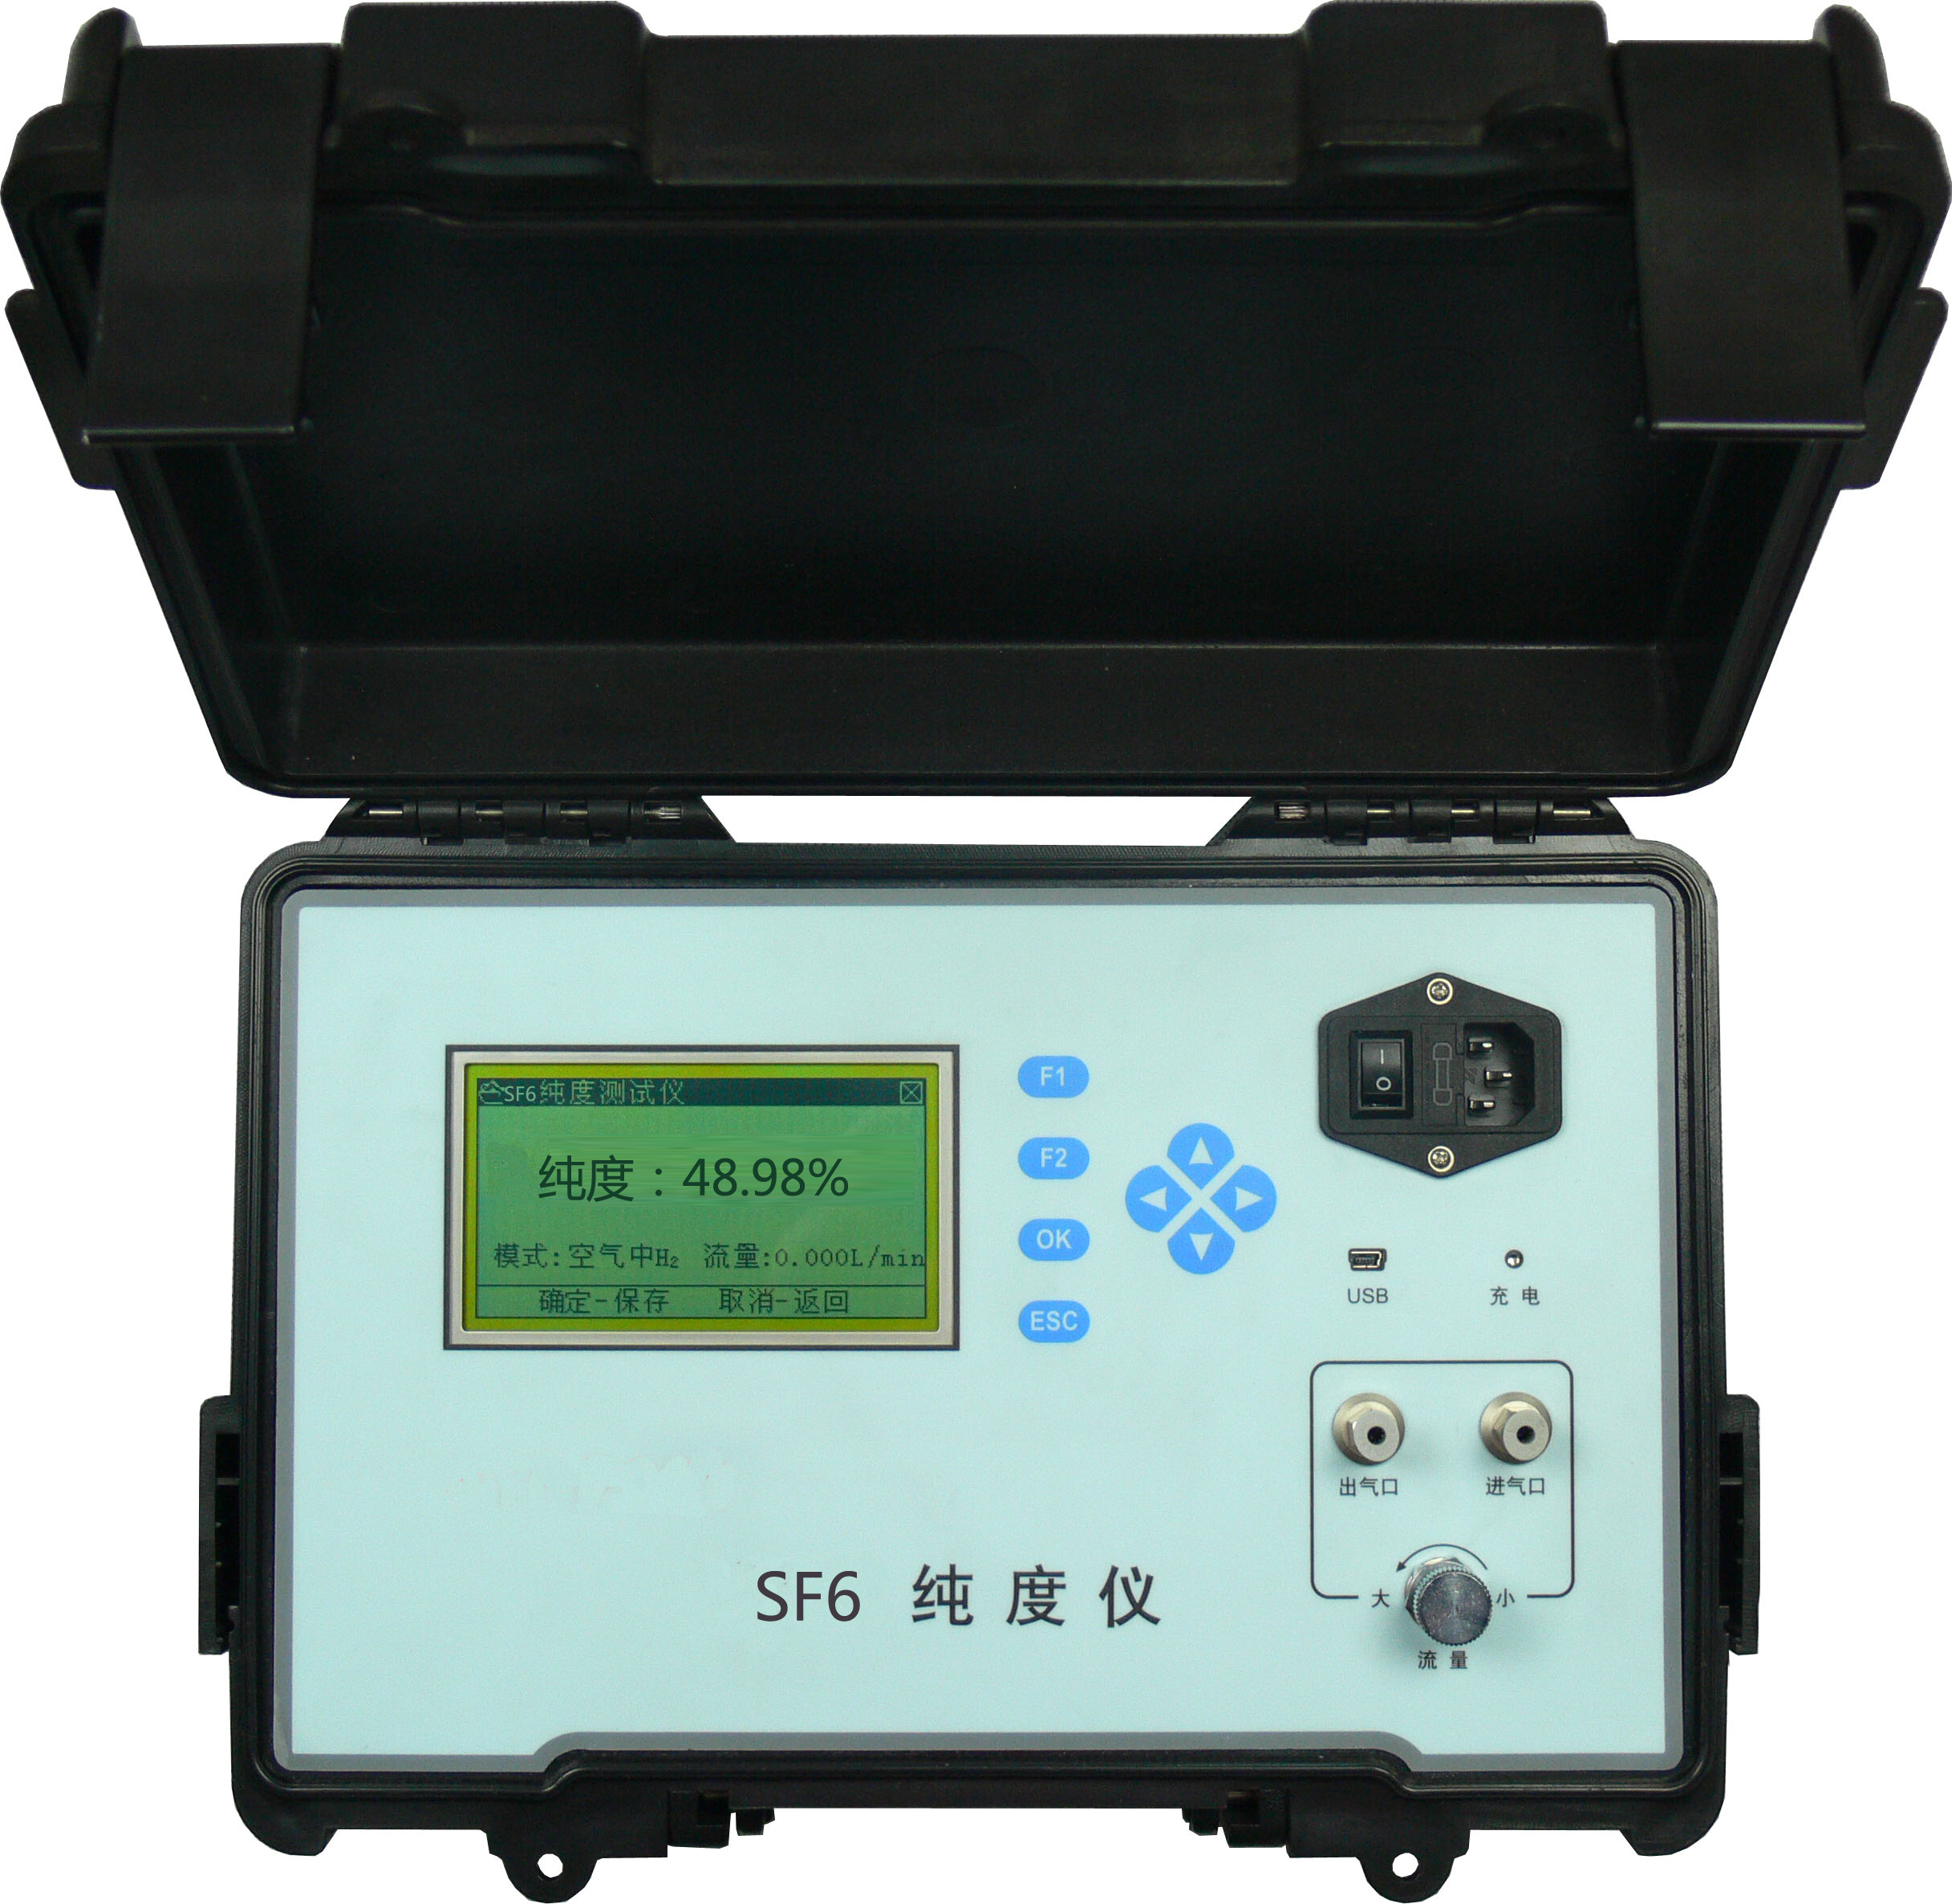 斯达沃便携式气体纯度分析仪SDW-101